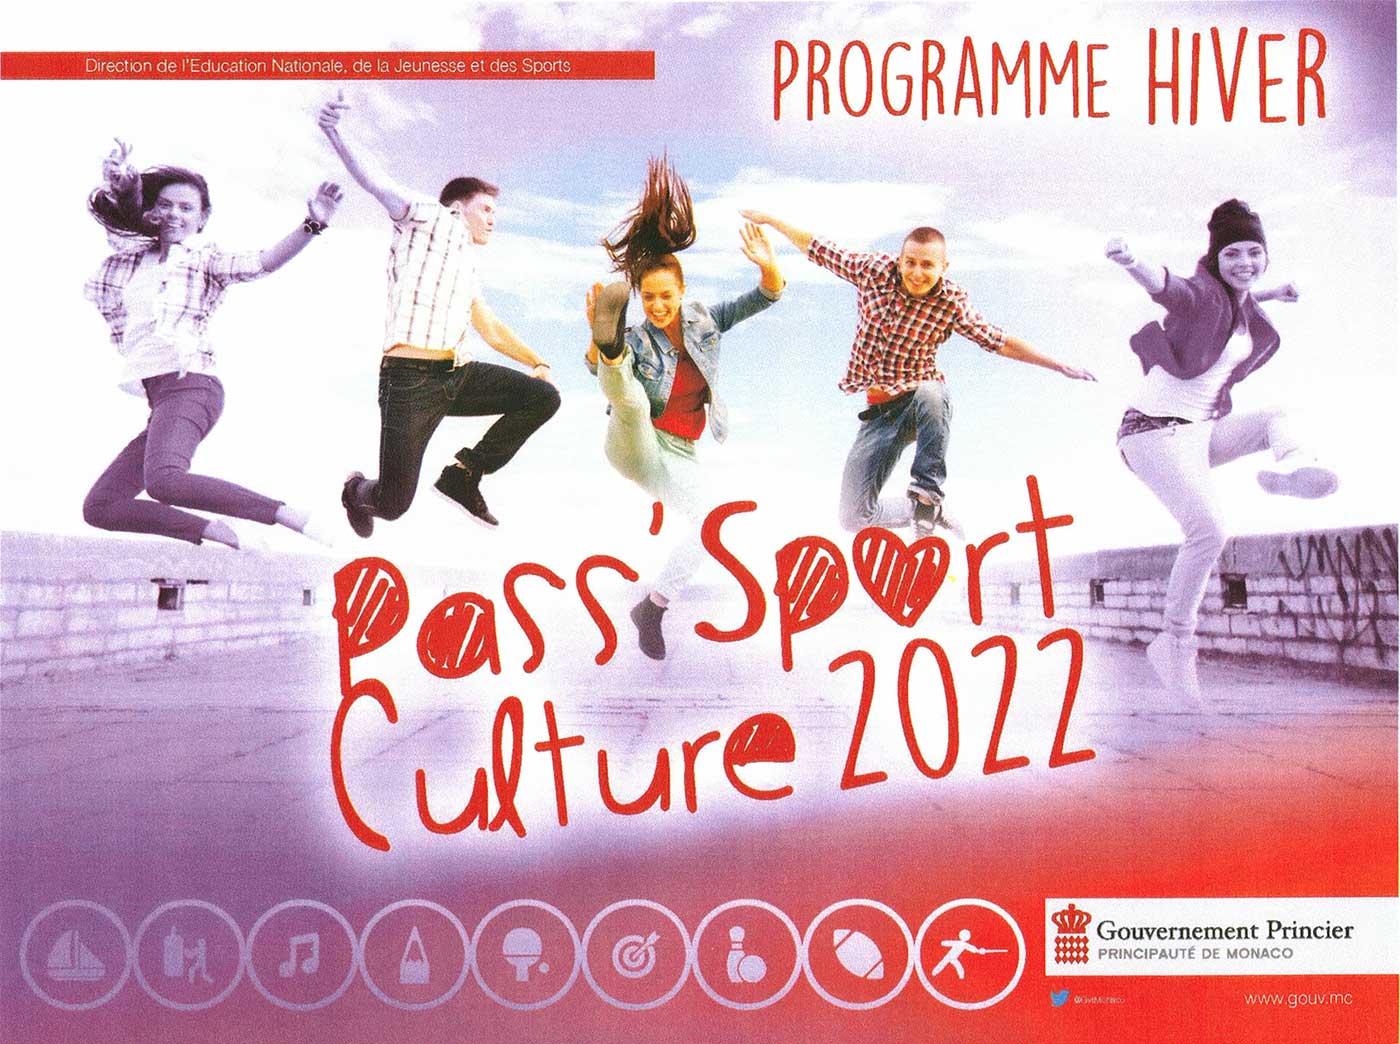 Couverture brochure Passcul 2022